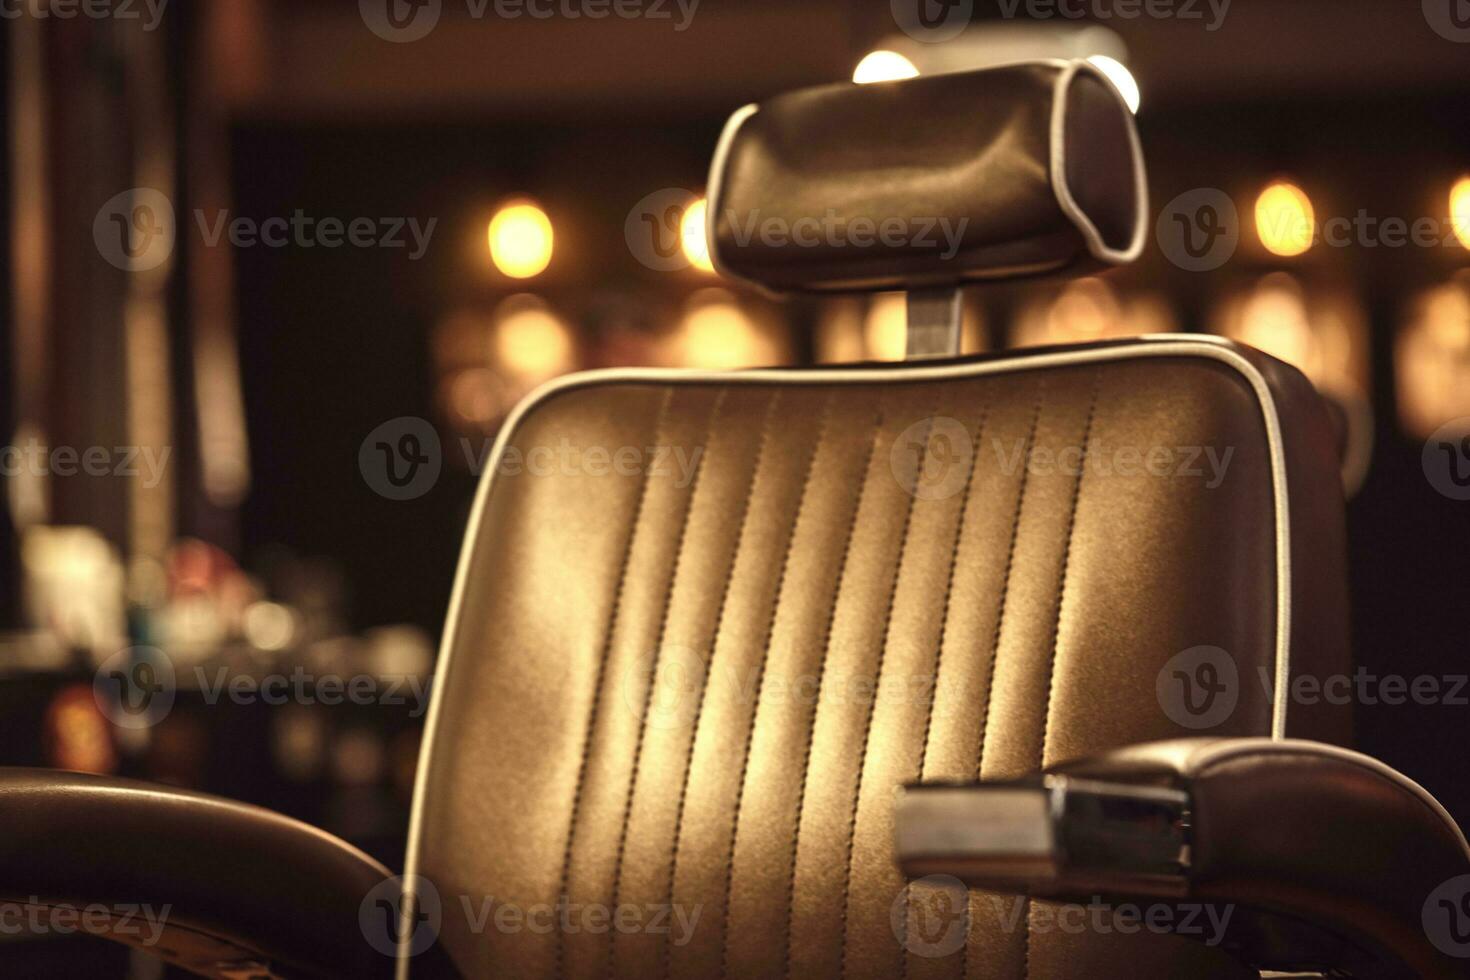 marron cuir chaise dans salon de coiffure. grenier style photo